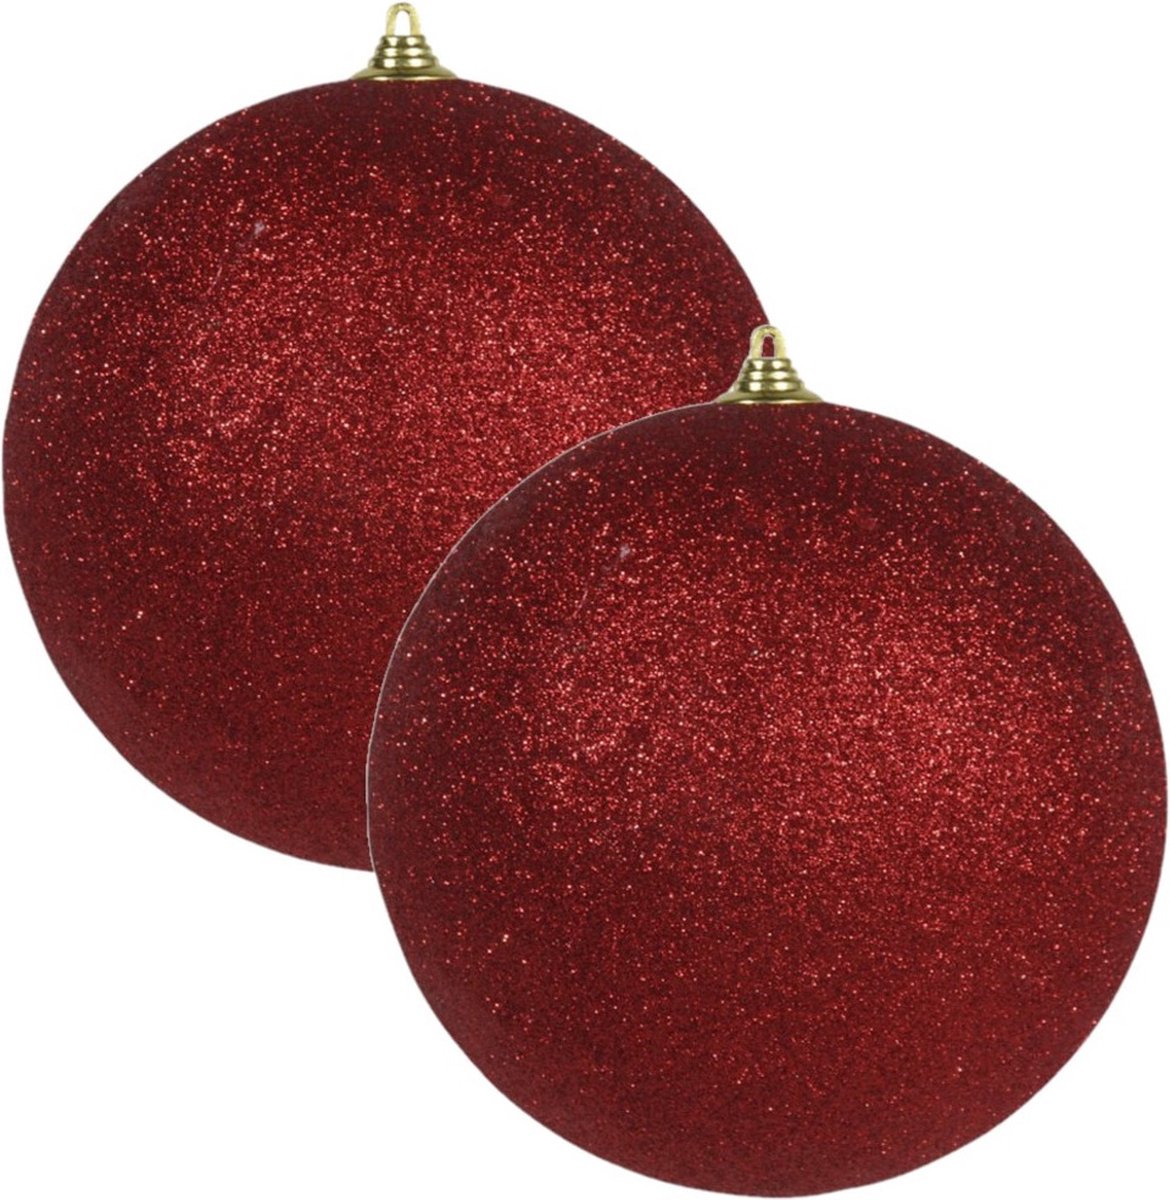 2x Rode grote glitter kerstballen 13,5 cm - hangdecoratie / boomversiering glitter kerstballen